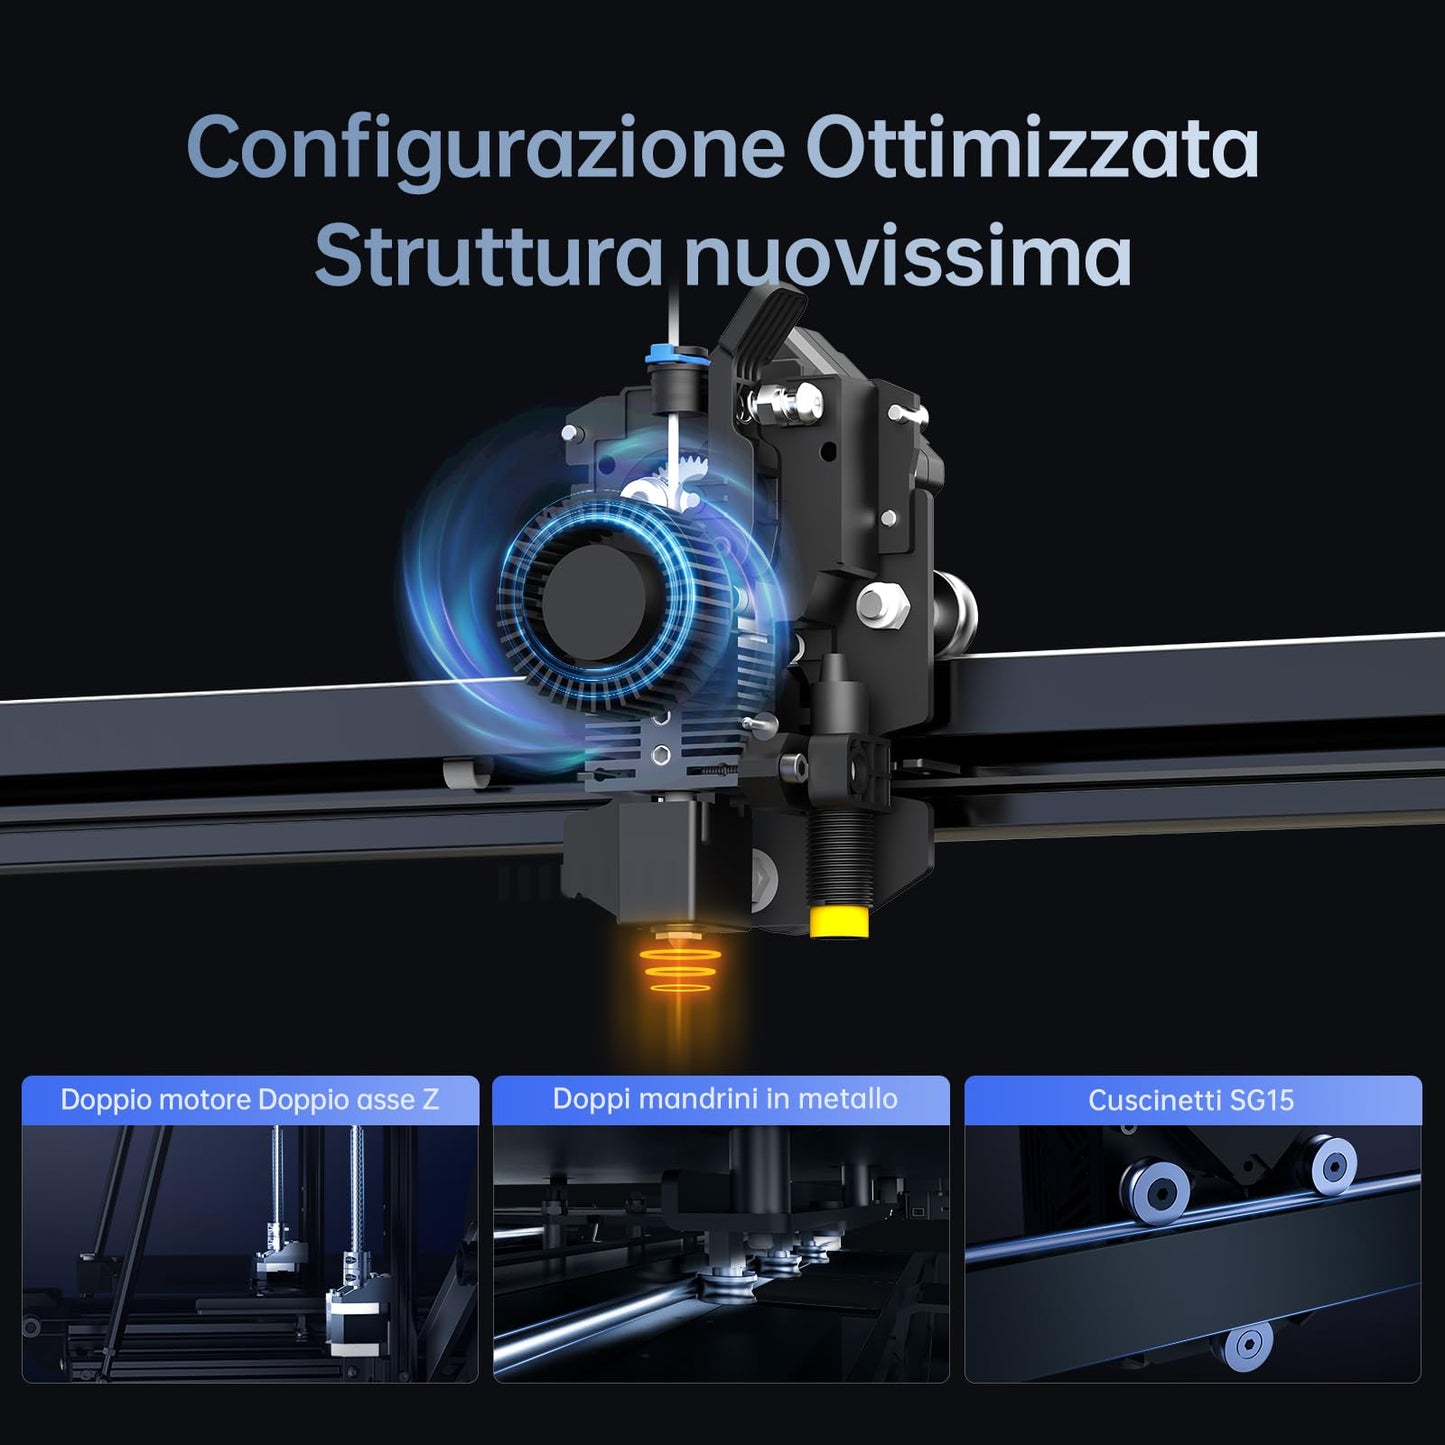 ANYCUBIC Kobra 2 Max Stampante 3D di Grandi Dimensioni,500 mm/s Velocità di Stampa